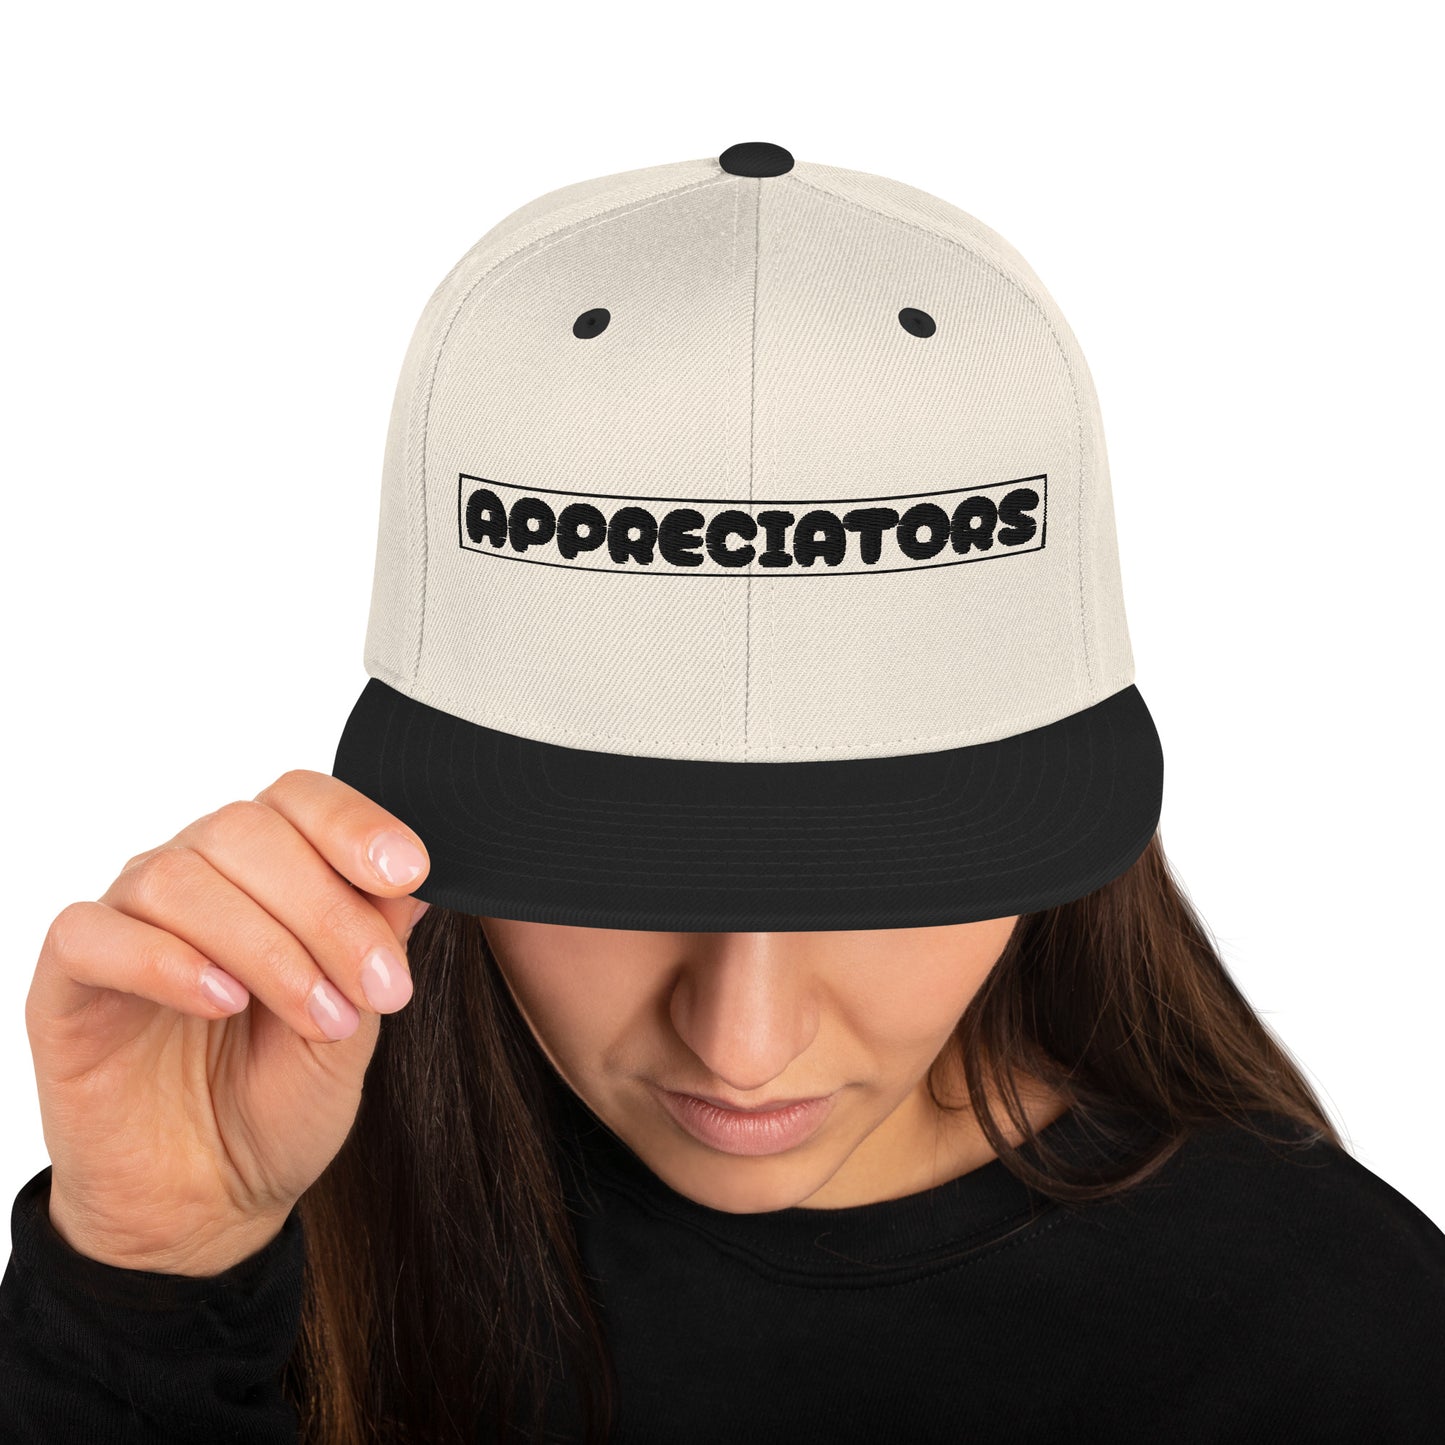 The Appreciators Companion Text Box Embroidered Snapback Hat